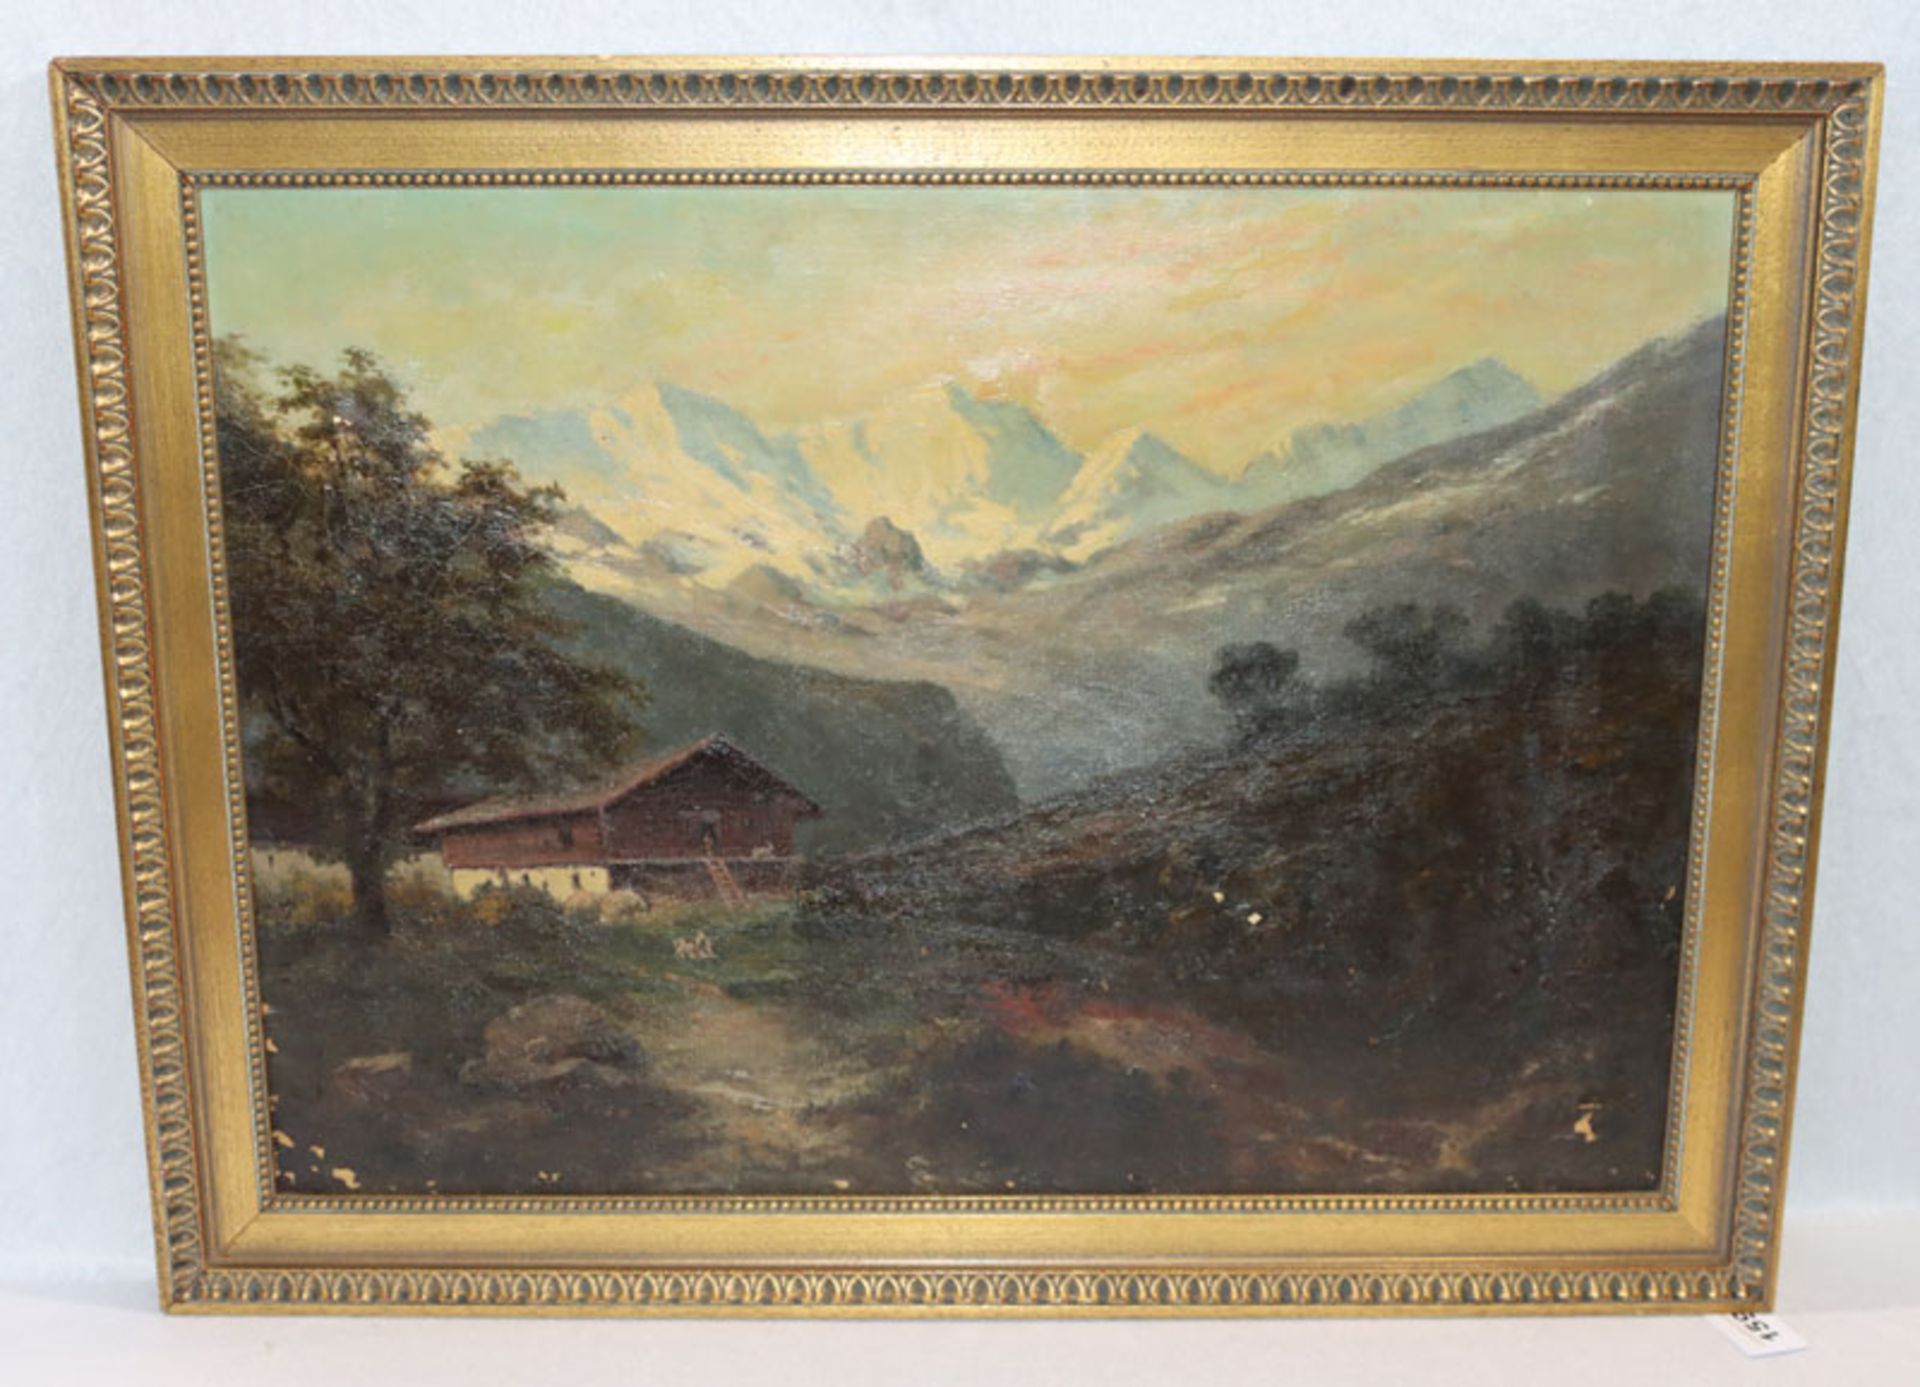 Gemälde ÖL/LW 'Haus im Hochgebirge', Bildoberfläche hat Farbablösungen und ist krakeliert,